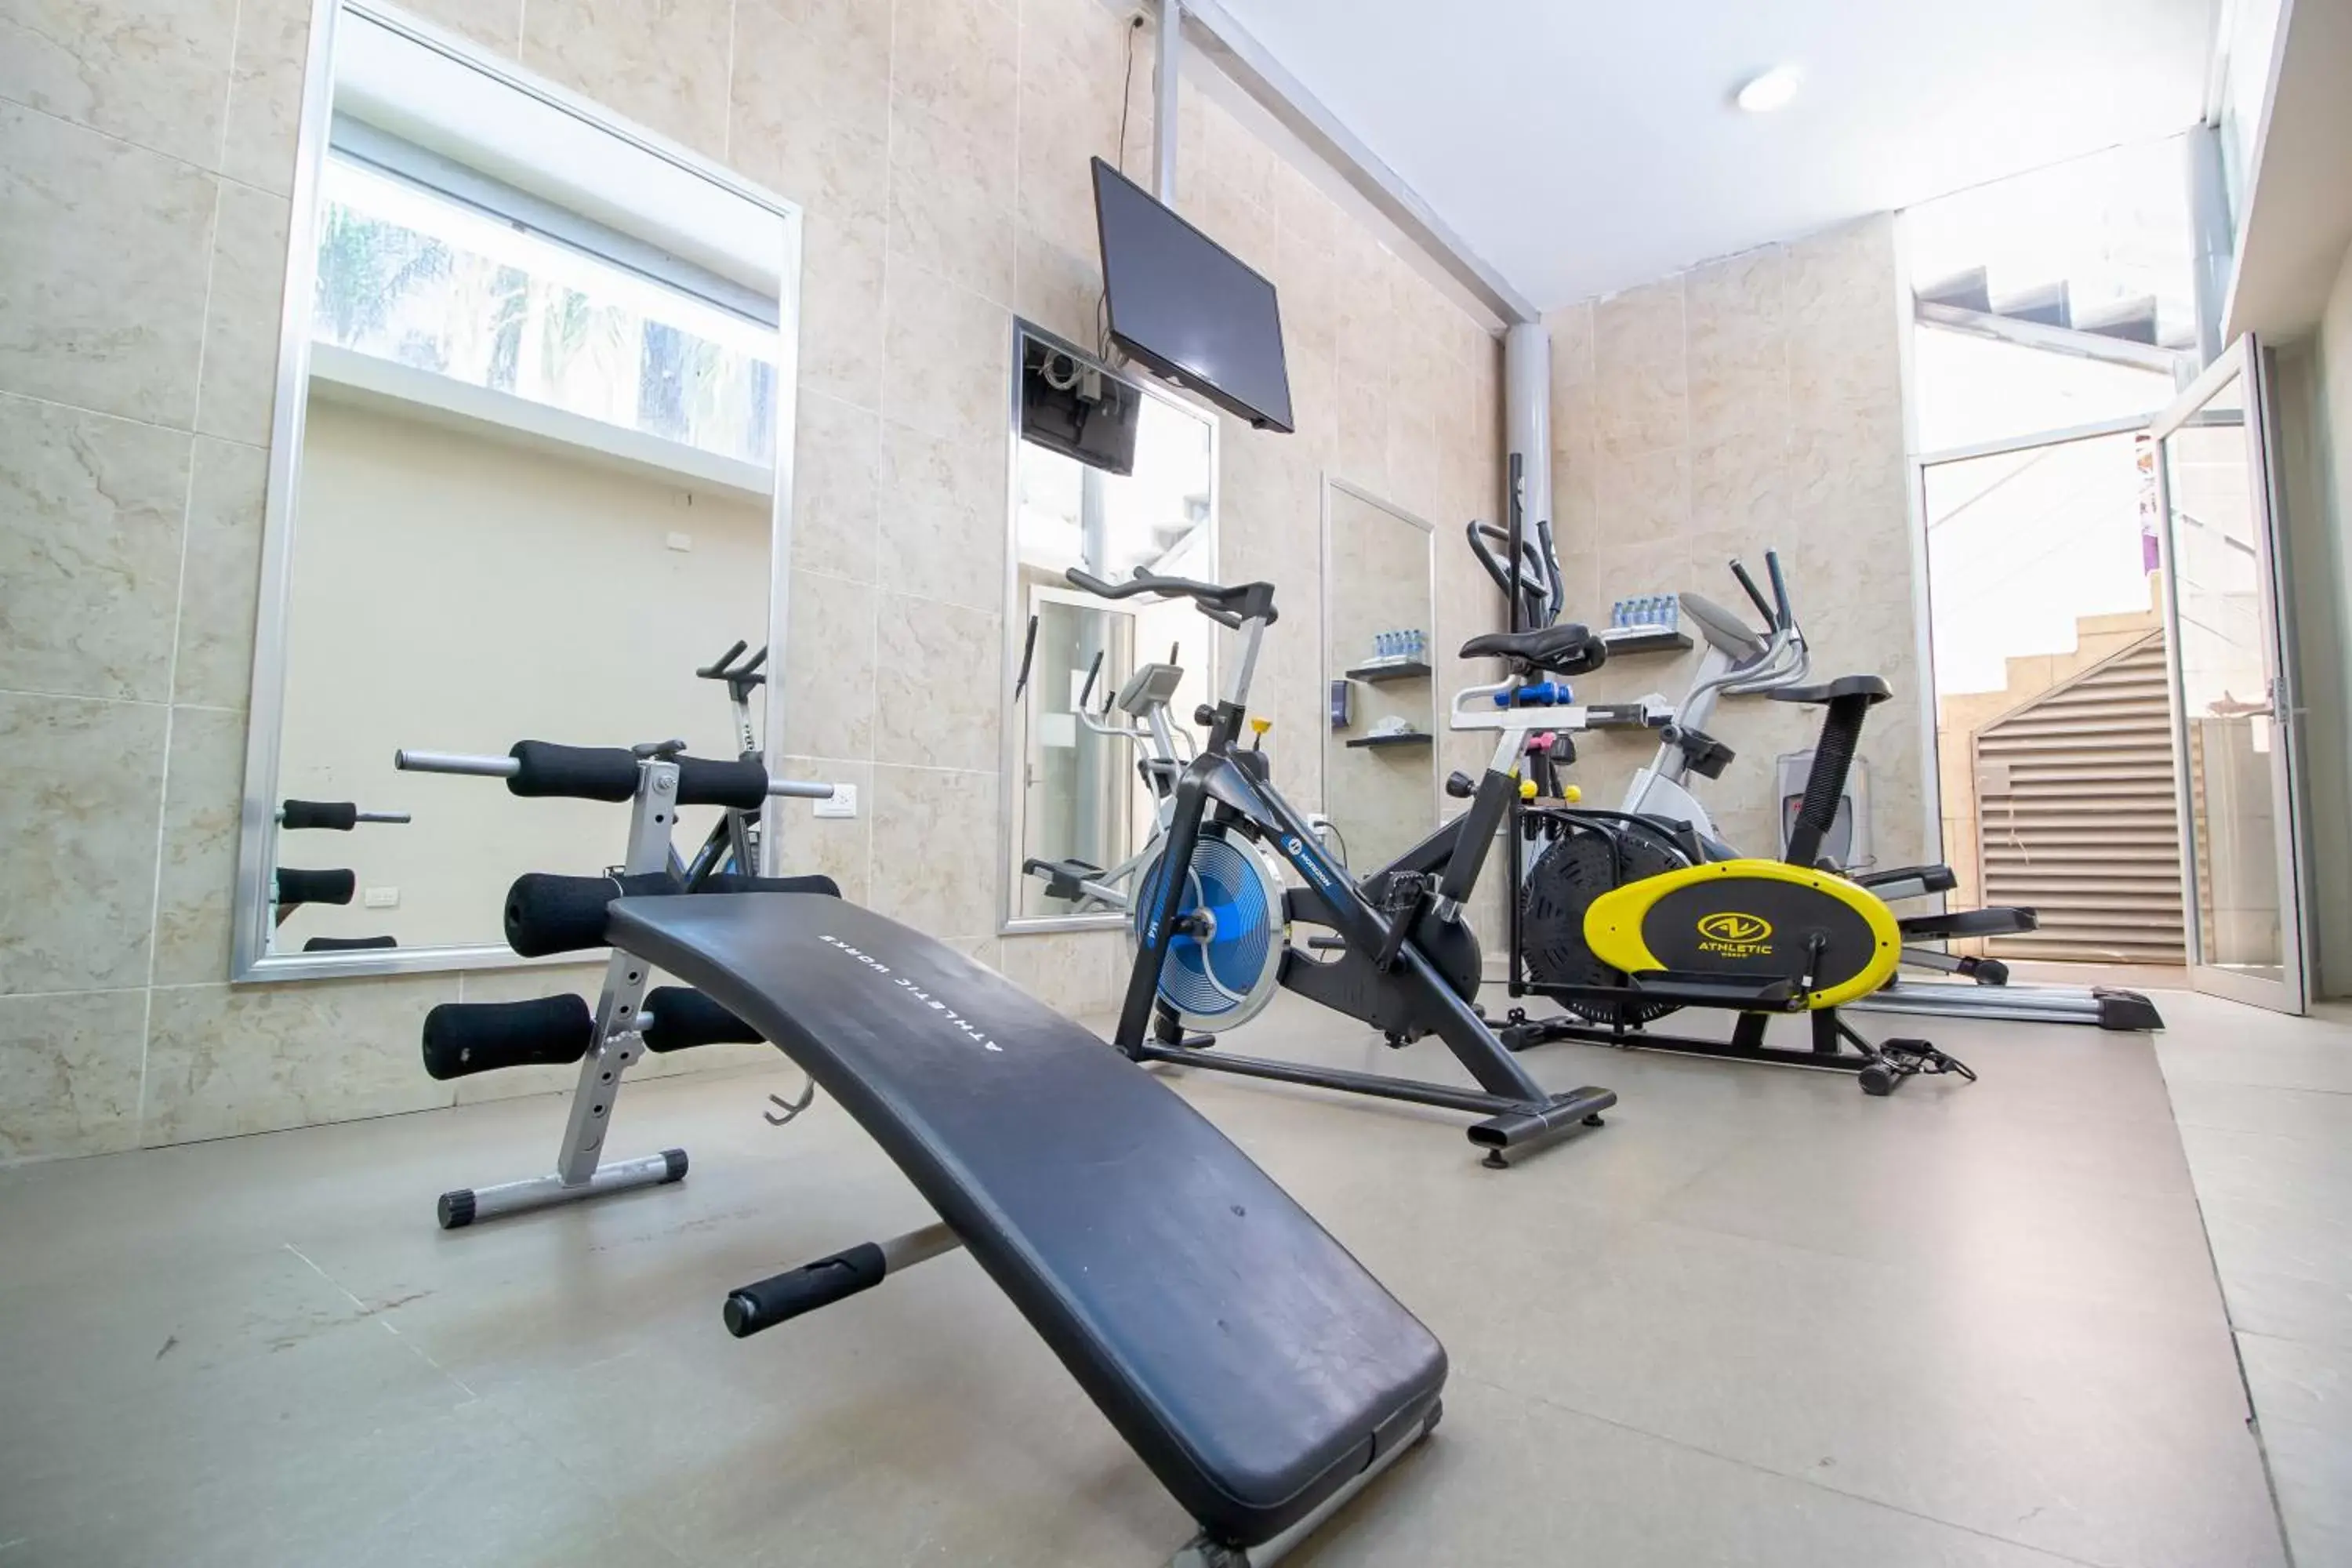 Fitness centre/facilities, Fitness Center/Facilities in Hotel El Español Paseo de Montejo